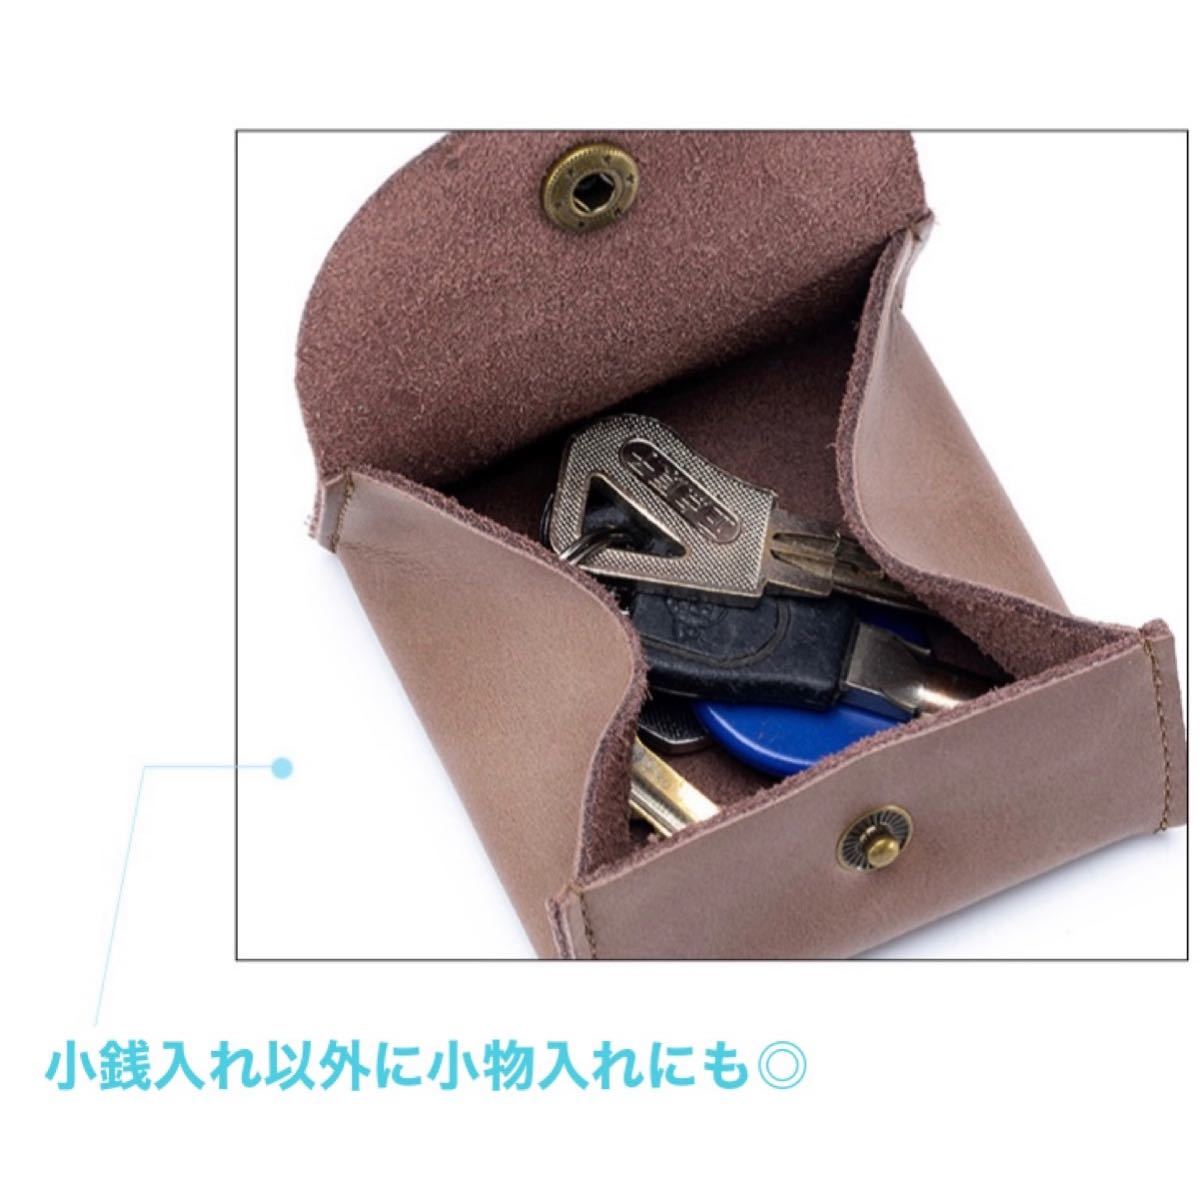 70％以上節約 小銭入れ 小さい財布 コインケース ナチュラル 柔らかい 便利 ボックス型